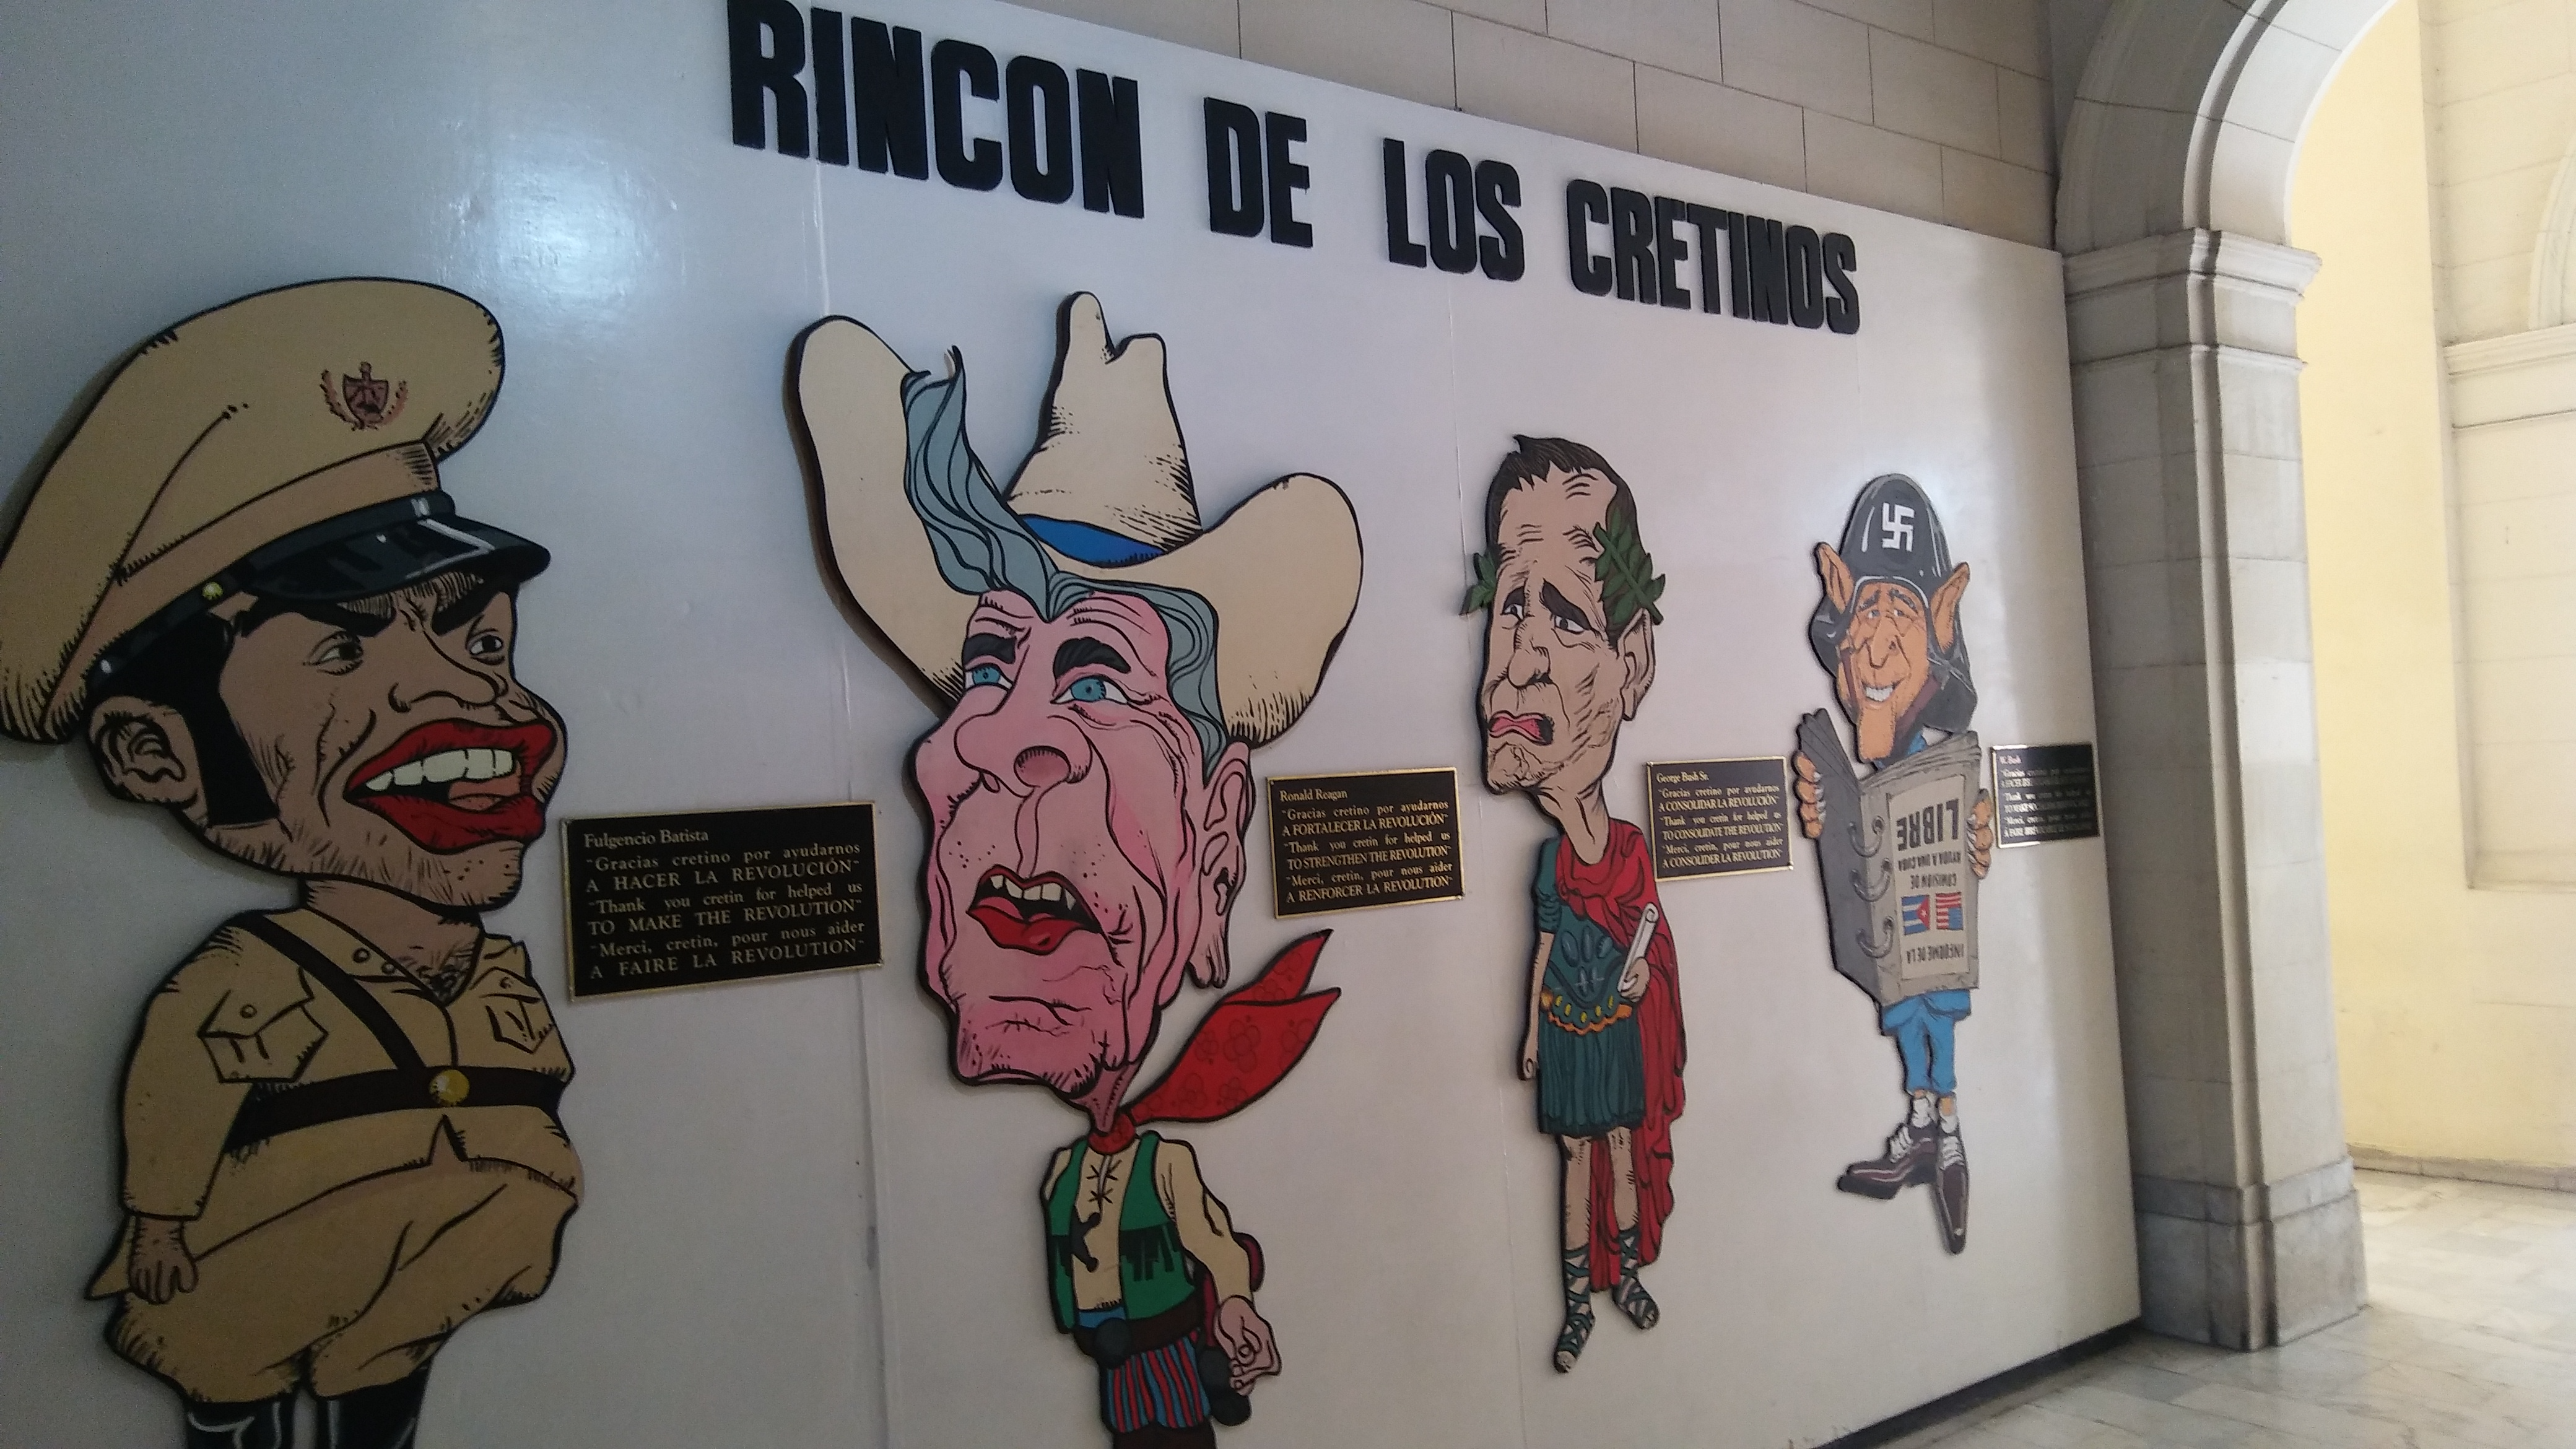 In Cuba's Museo de la Revolución, a wall of nearly life-sized caricatures of: Fulgencio Batista, Ronald Reagan, George H.W. Bush, George W. Bush